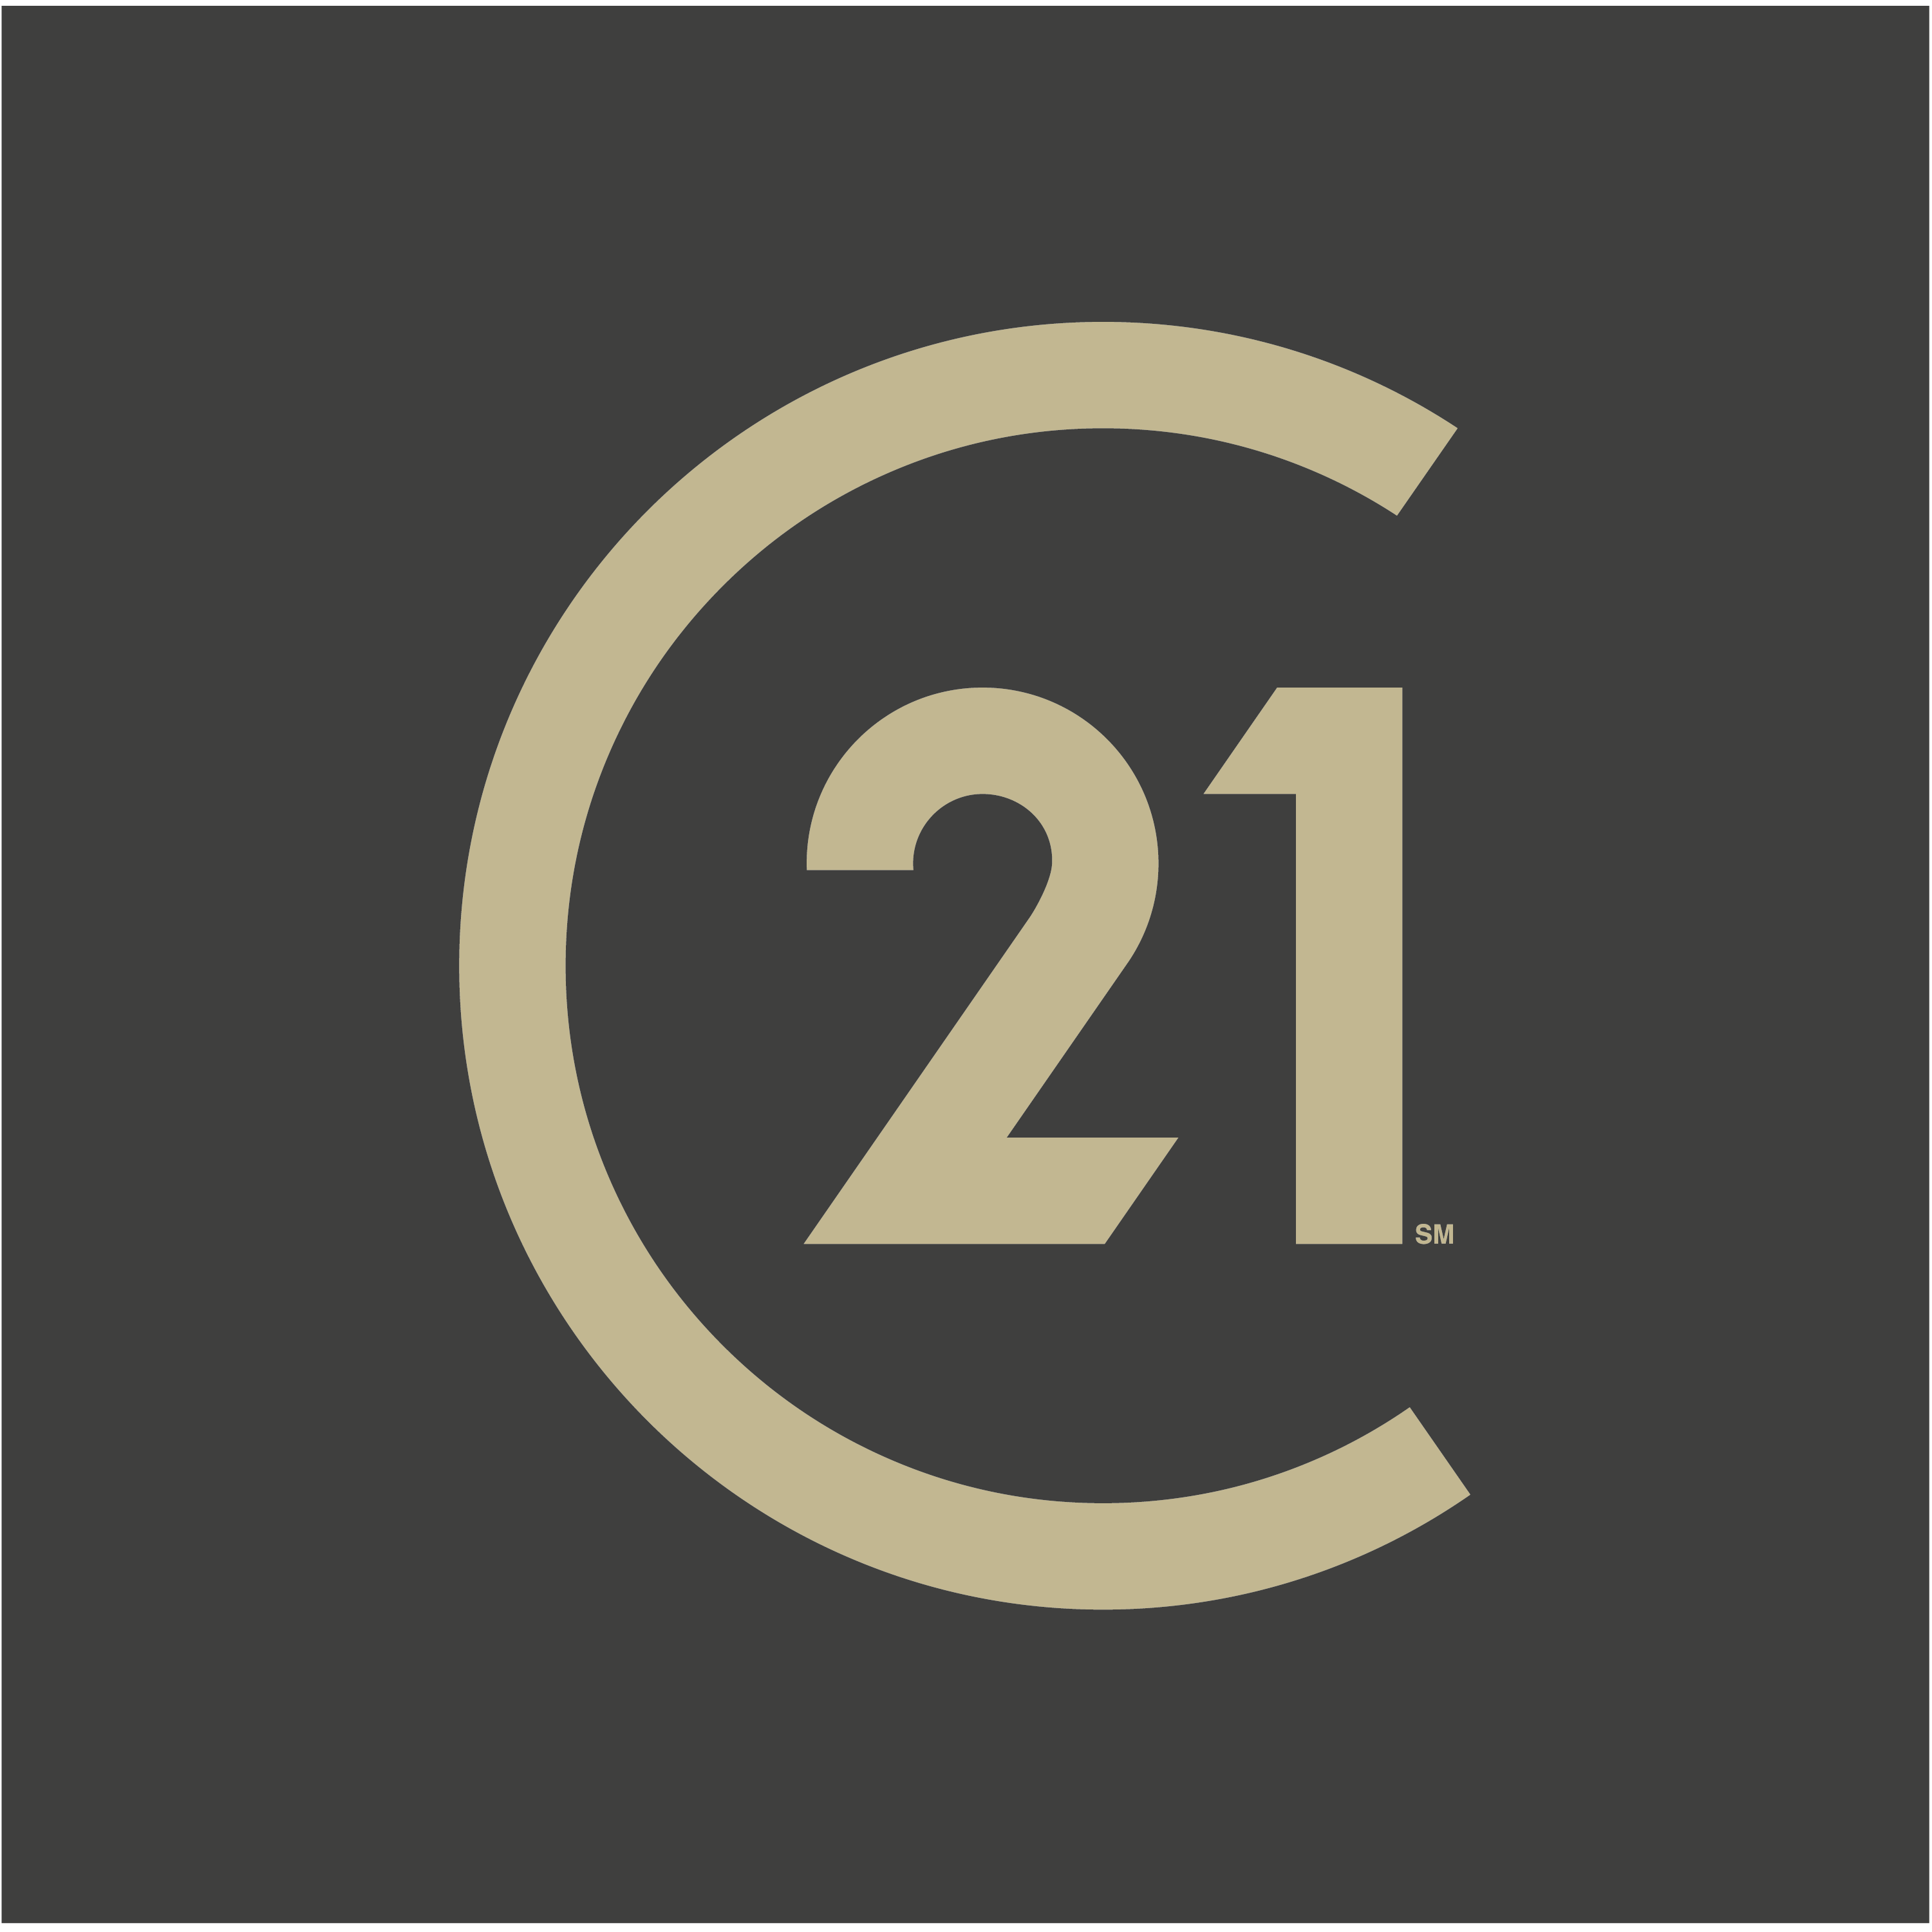 logo century 21.png